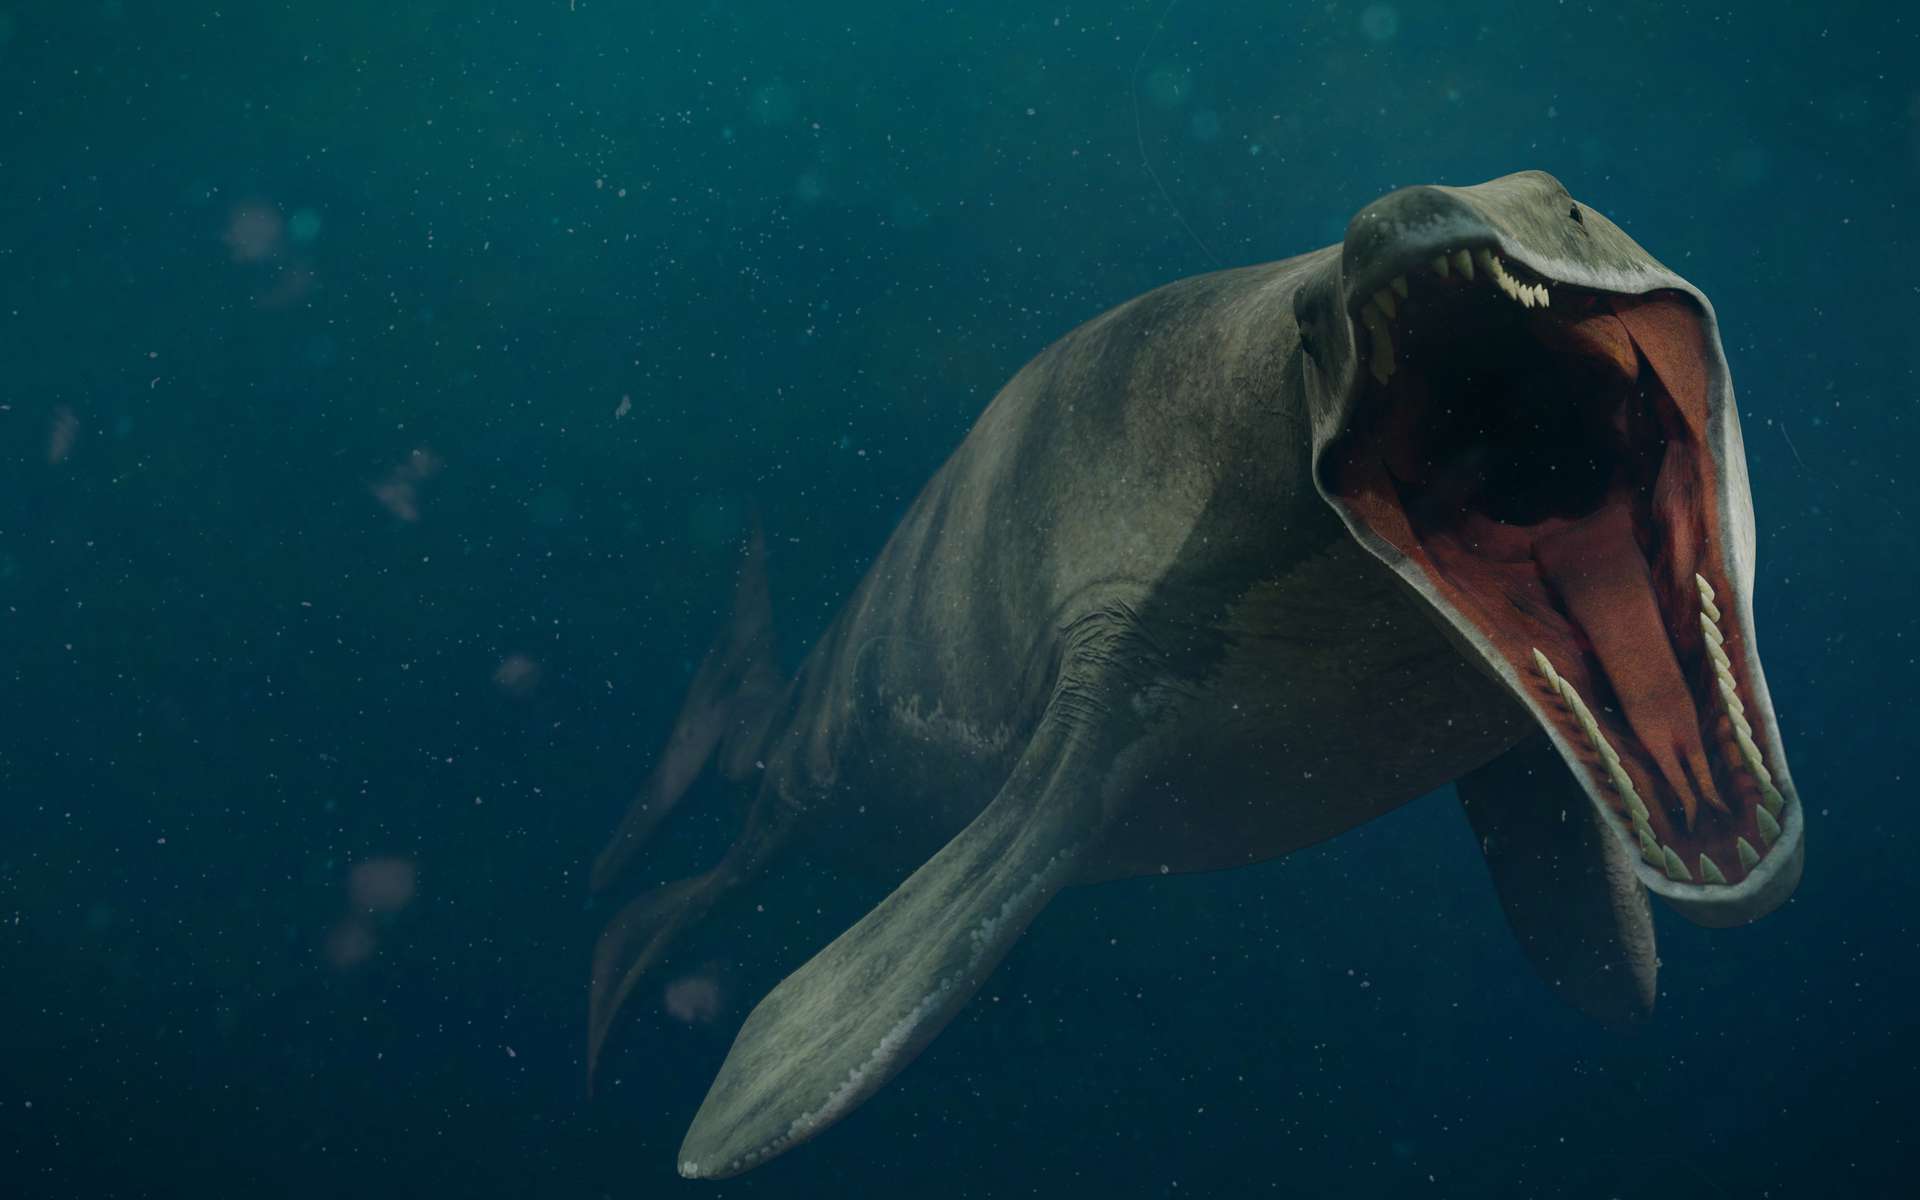 La scoperta di una lucertola gigante che diffuse il terrore nell’oceano 66 milioni di anni fa!